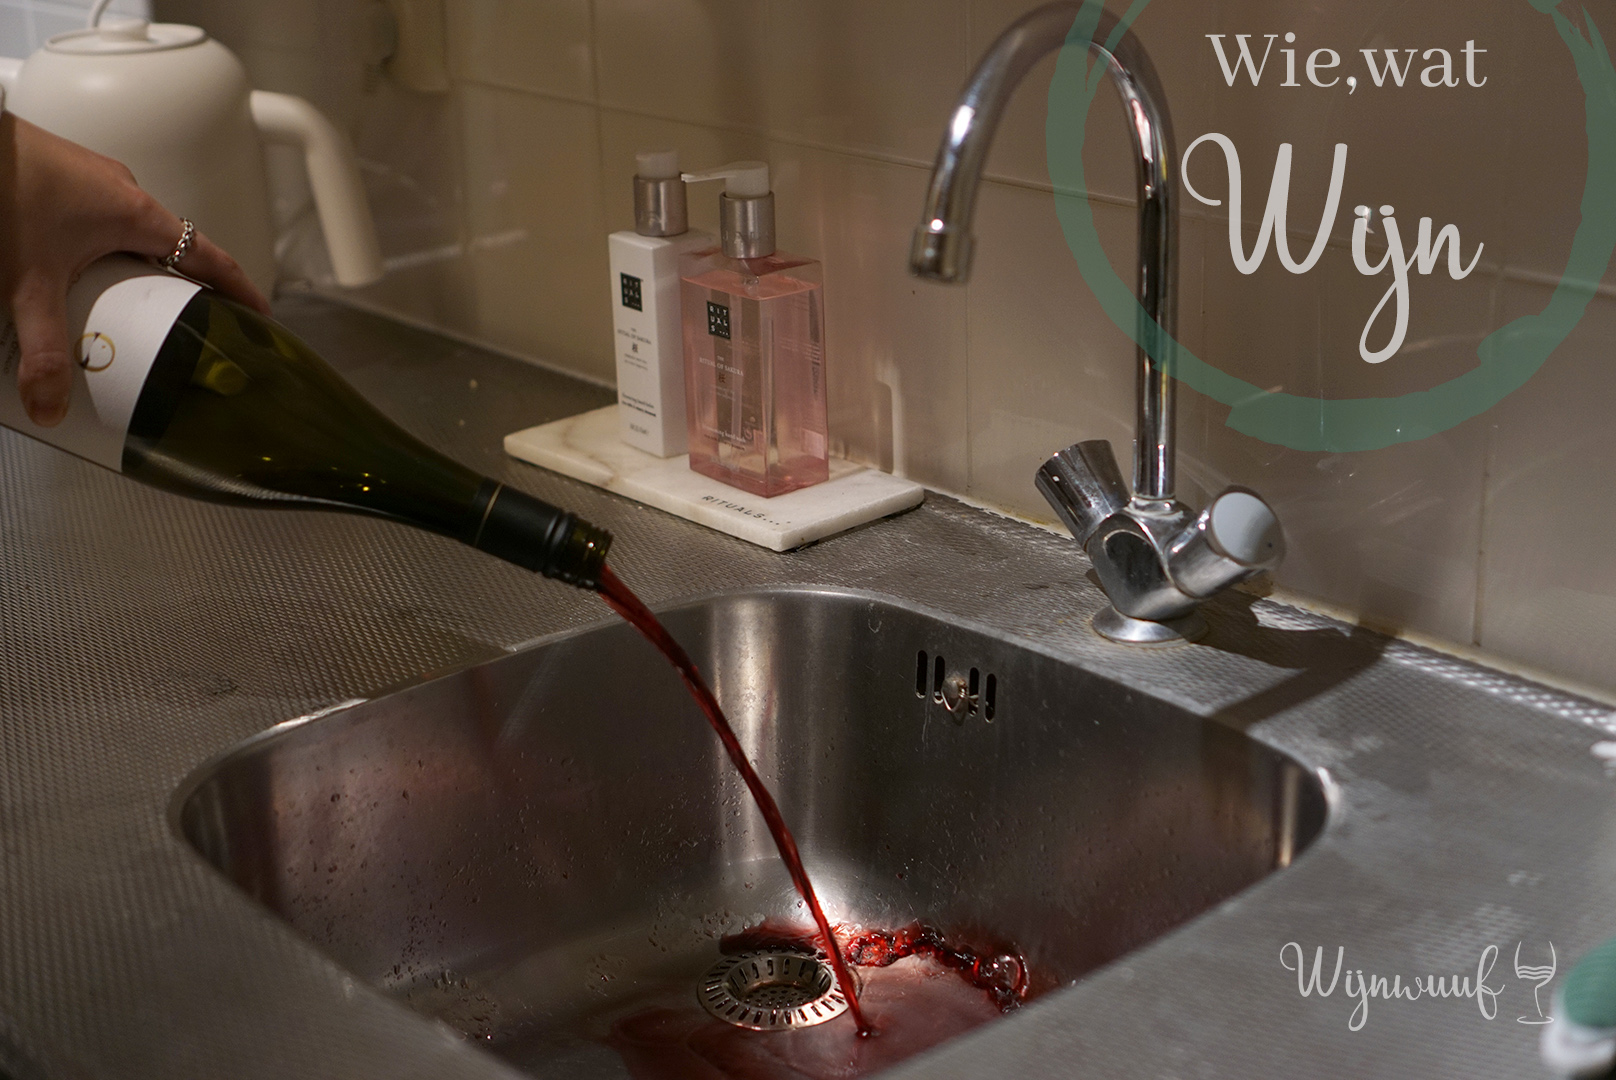 ik ben slaperig Illusie aflevering Wie, wat, wijn: 5 meest voorkomende wijnfouten – Wijnwuuf